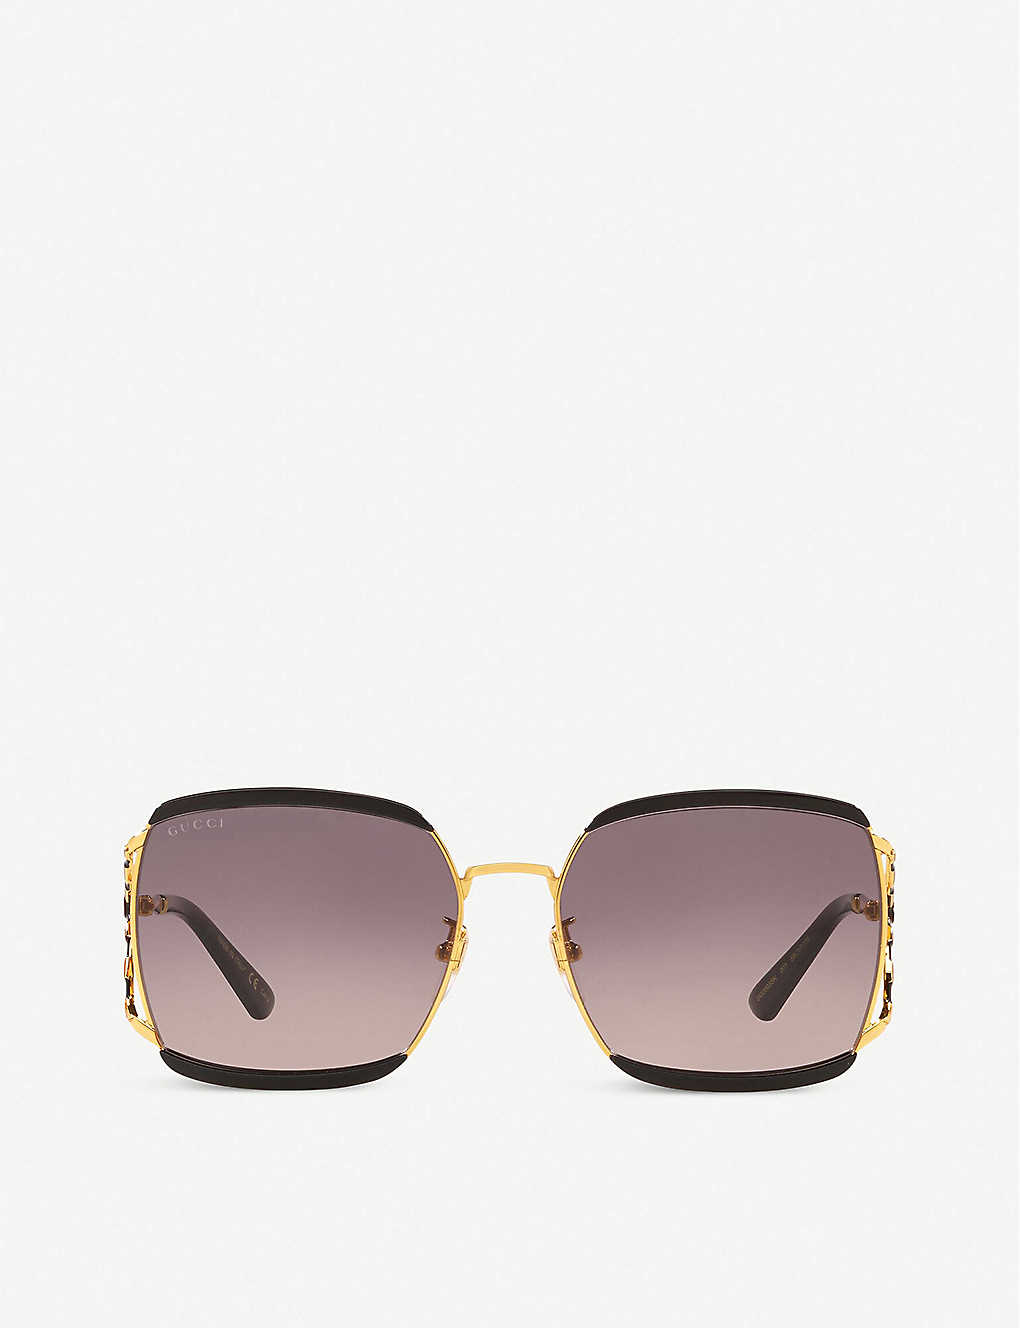 GG0593SK rectangular sunglasses(8453047)